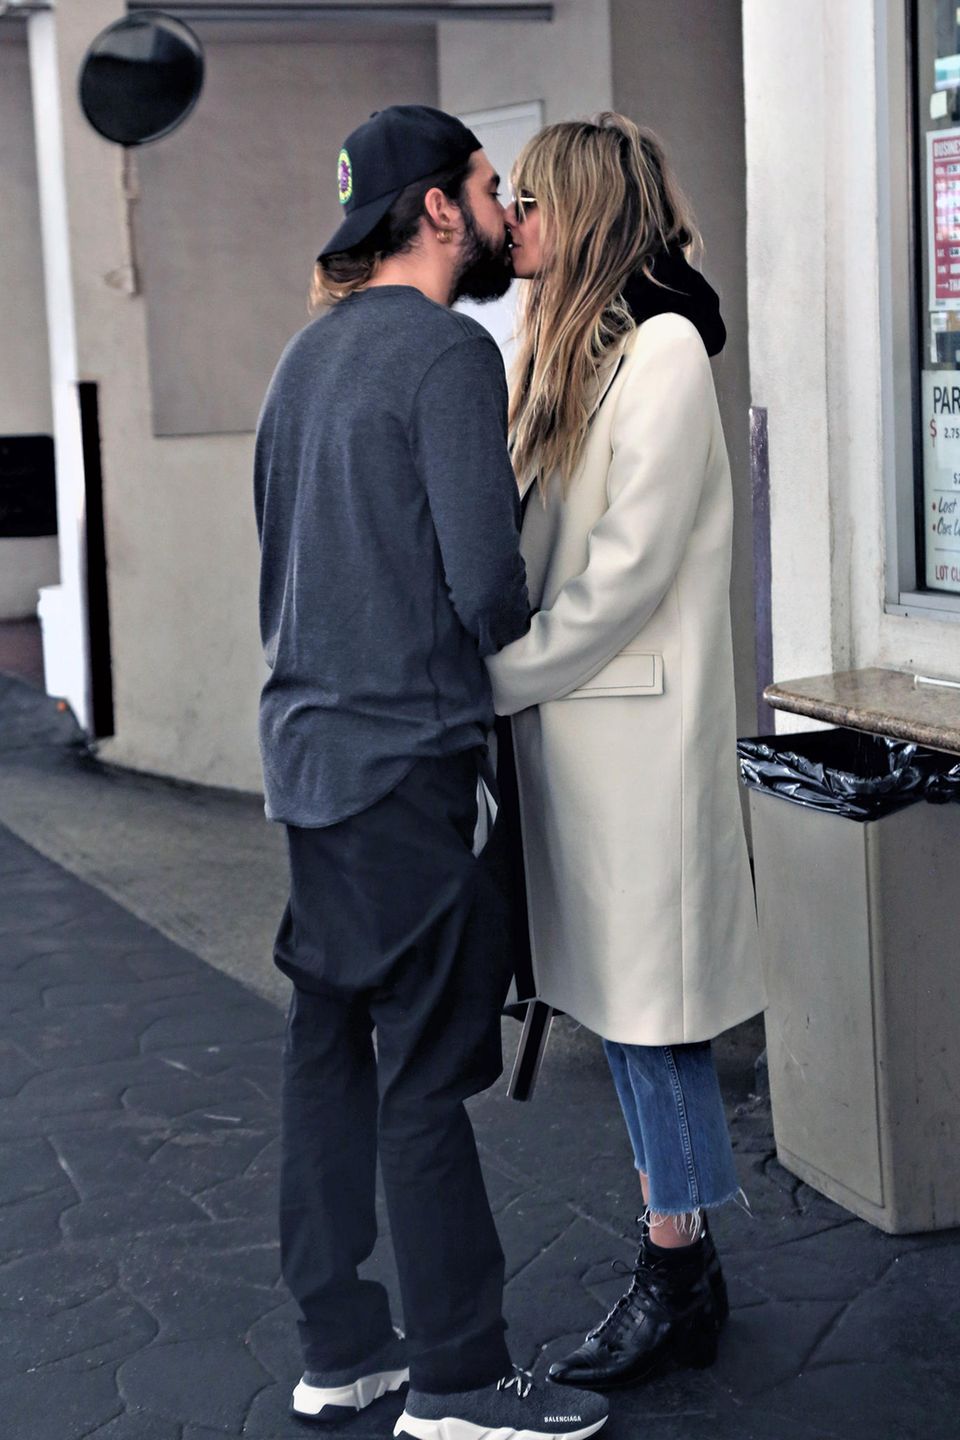 12. Dezember 2019  Nach dem gemeinsamen Lunch im Giorgio Baldi Restaurant in Beverly Hills, küssen sich Tom Kaulitz und Heidi Klum auf der Straße zärtlich. 